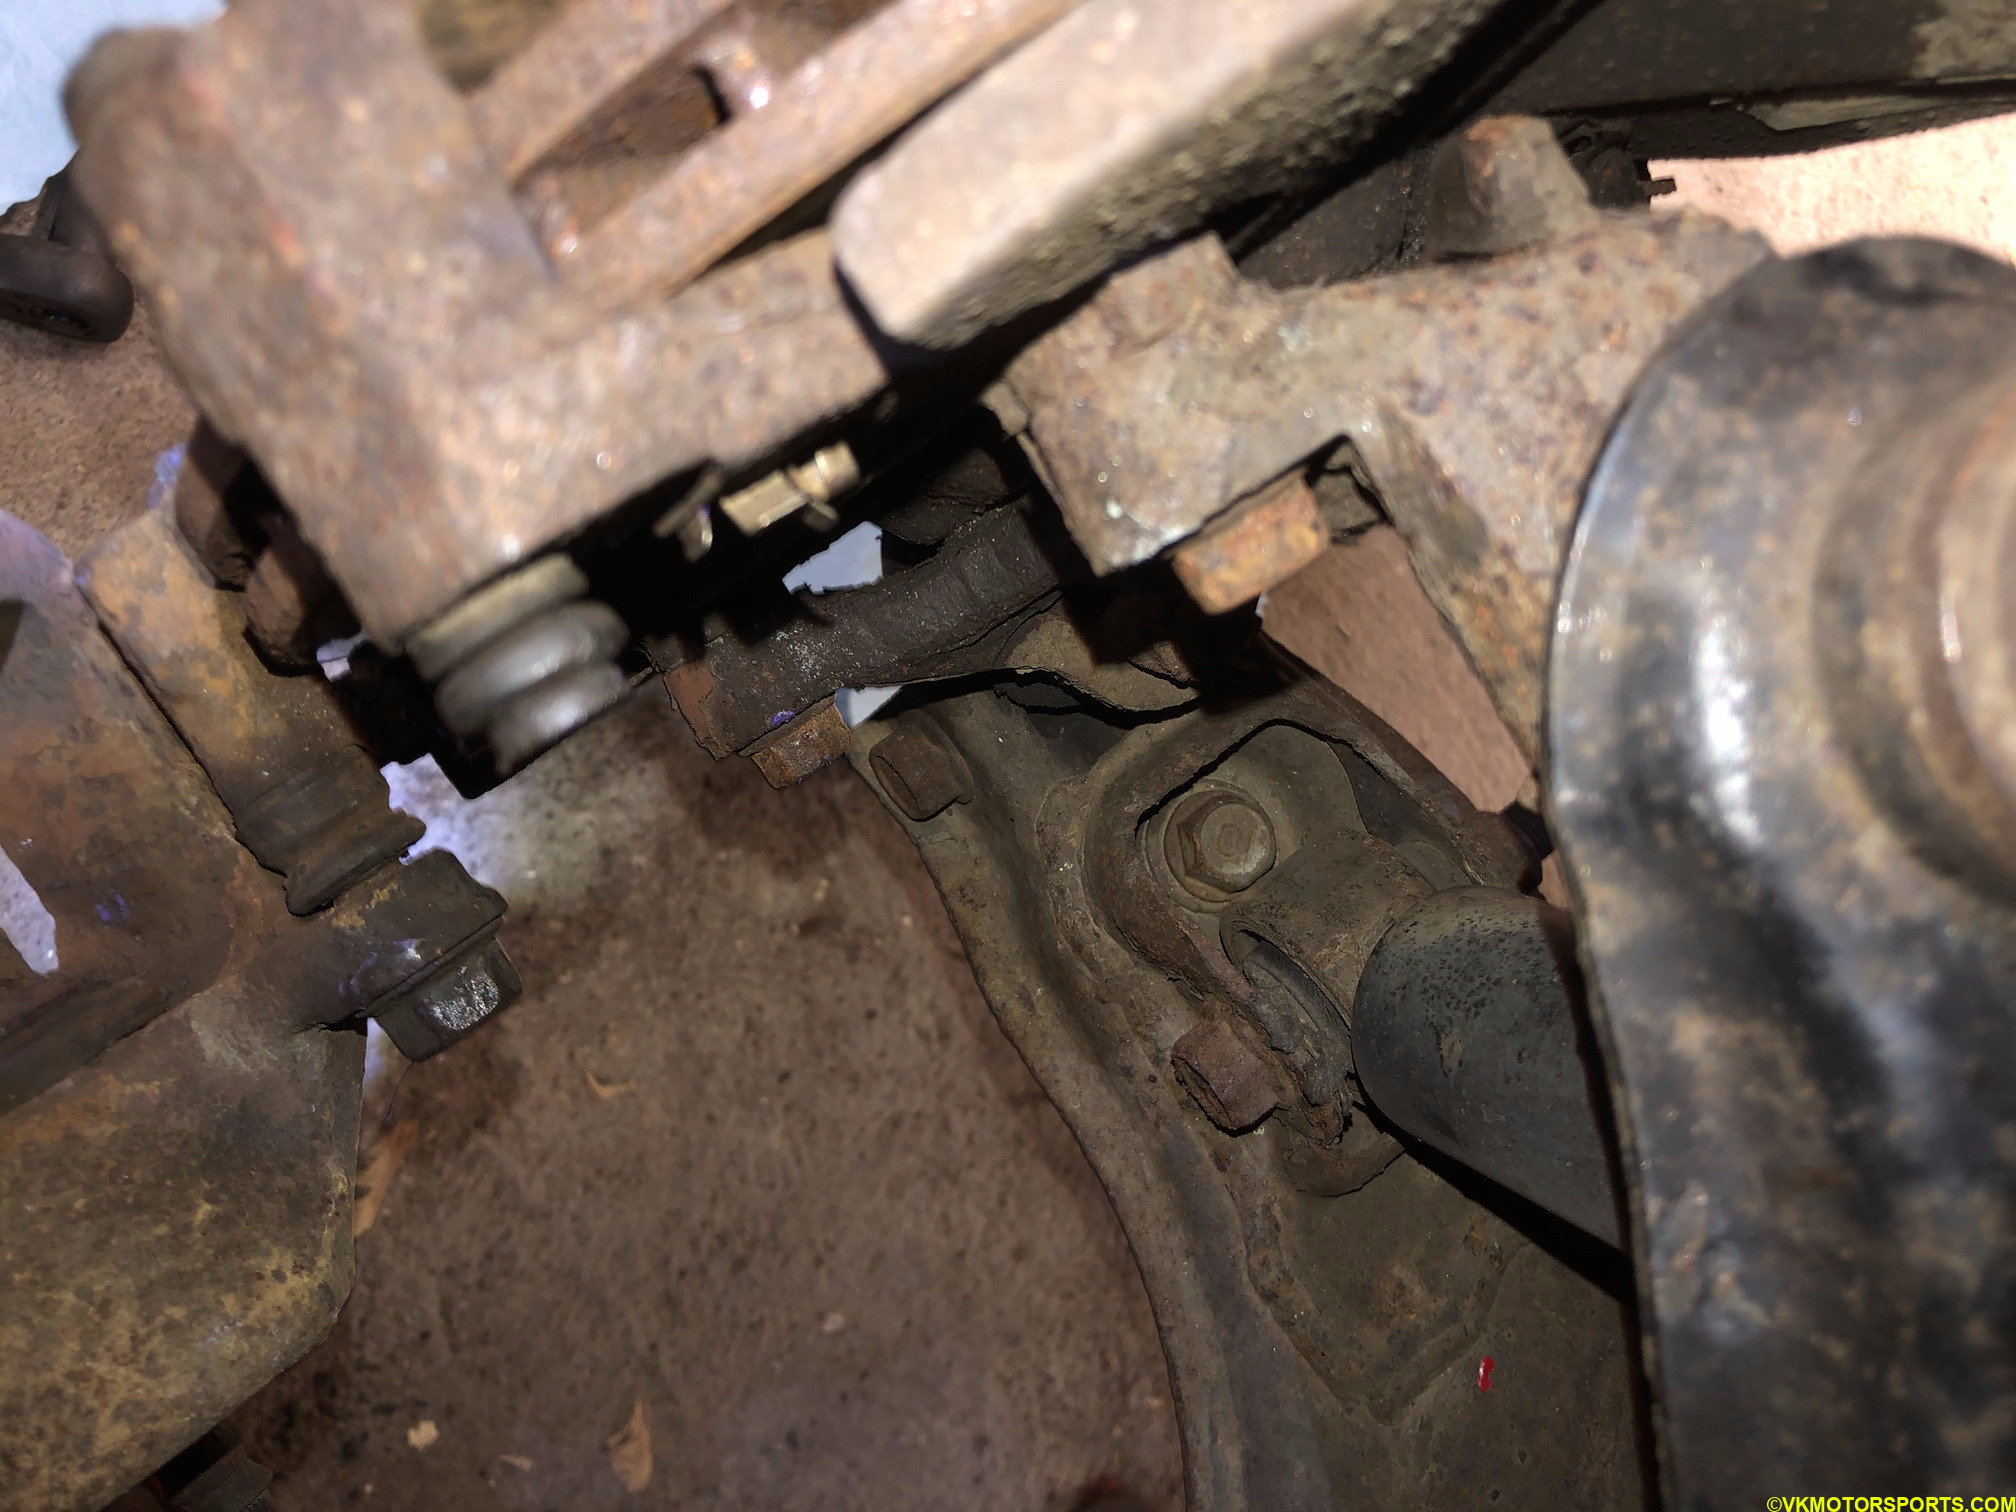 Upper nut view of the brake caliper bracket (leftmost)